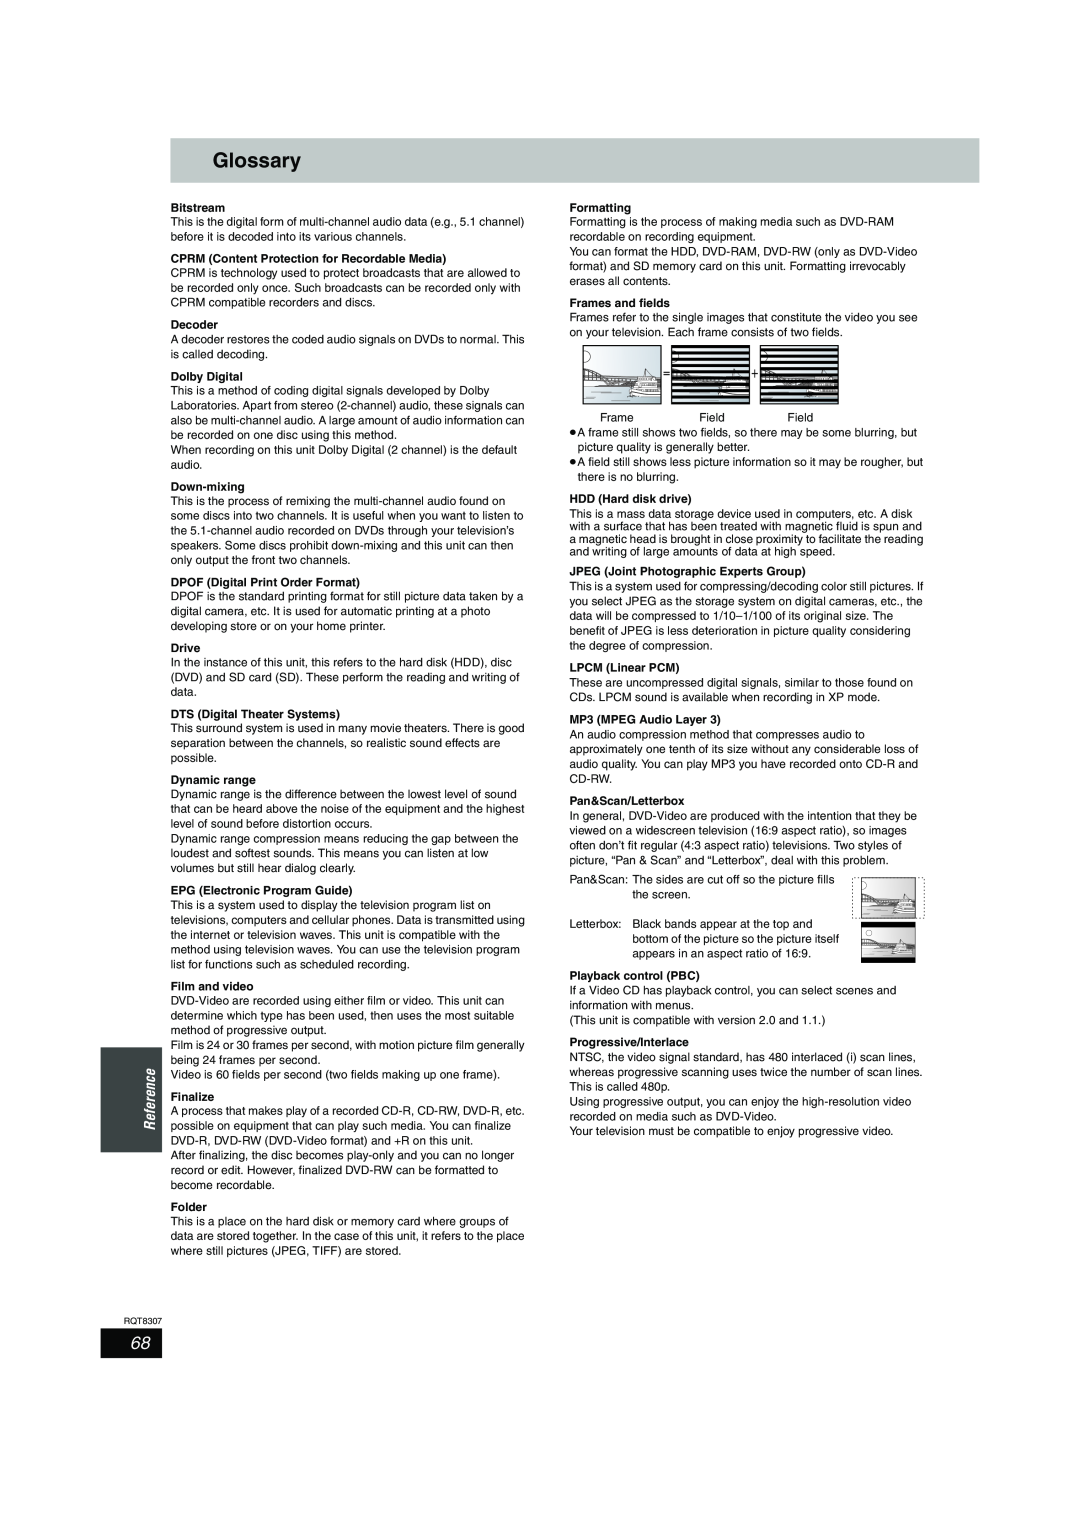 Panasonic DMR-EH60 warranty Glossary 